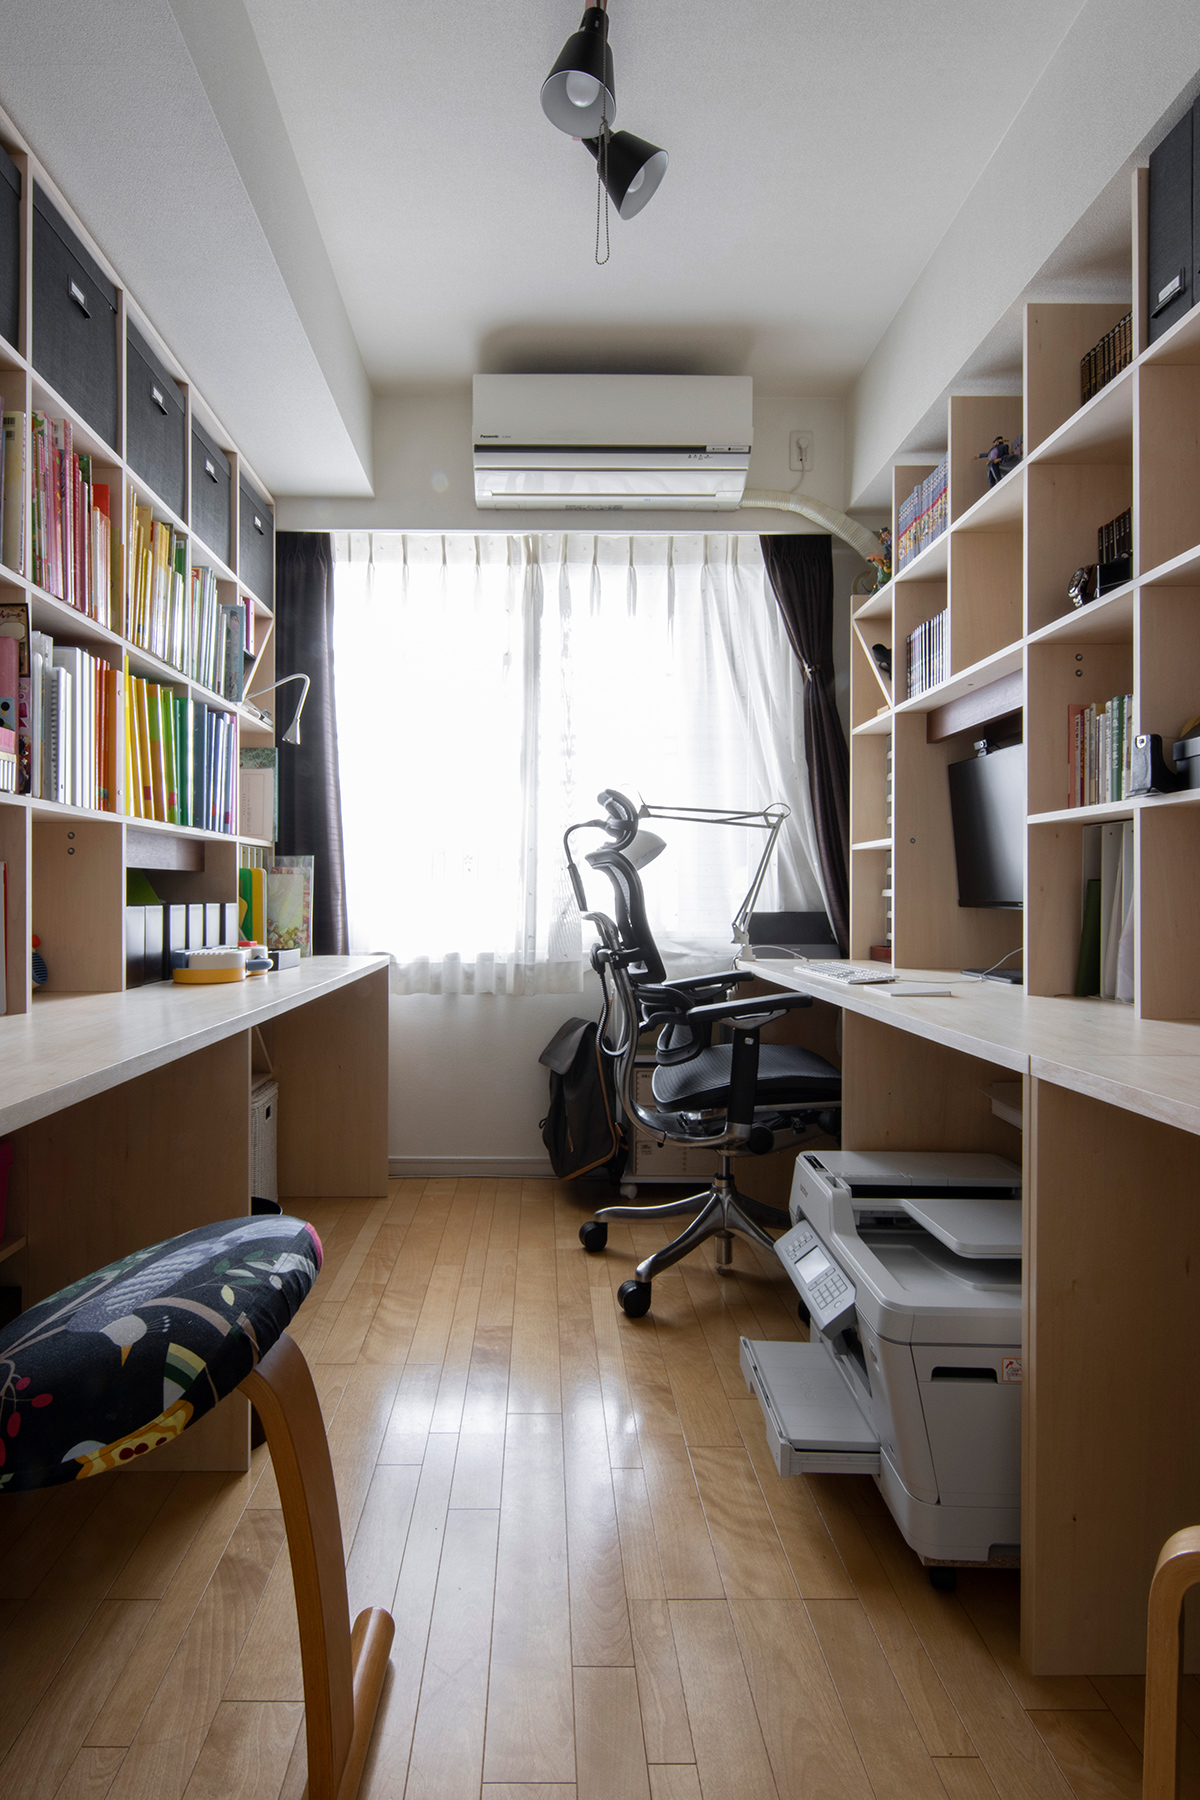 マルゲリータ Shelf（シェルフ）カウンター付き本棚を2つ設置し、リビングを緩やかに仕切りながらコンパクトな書斎